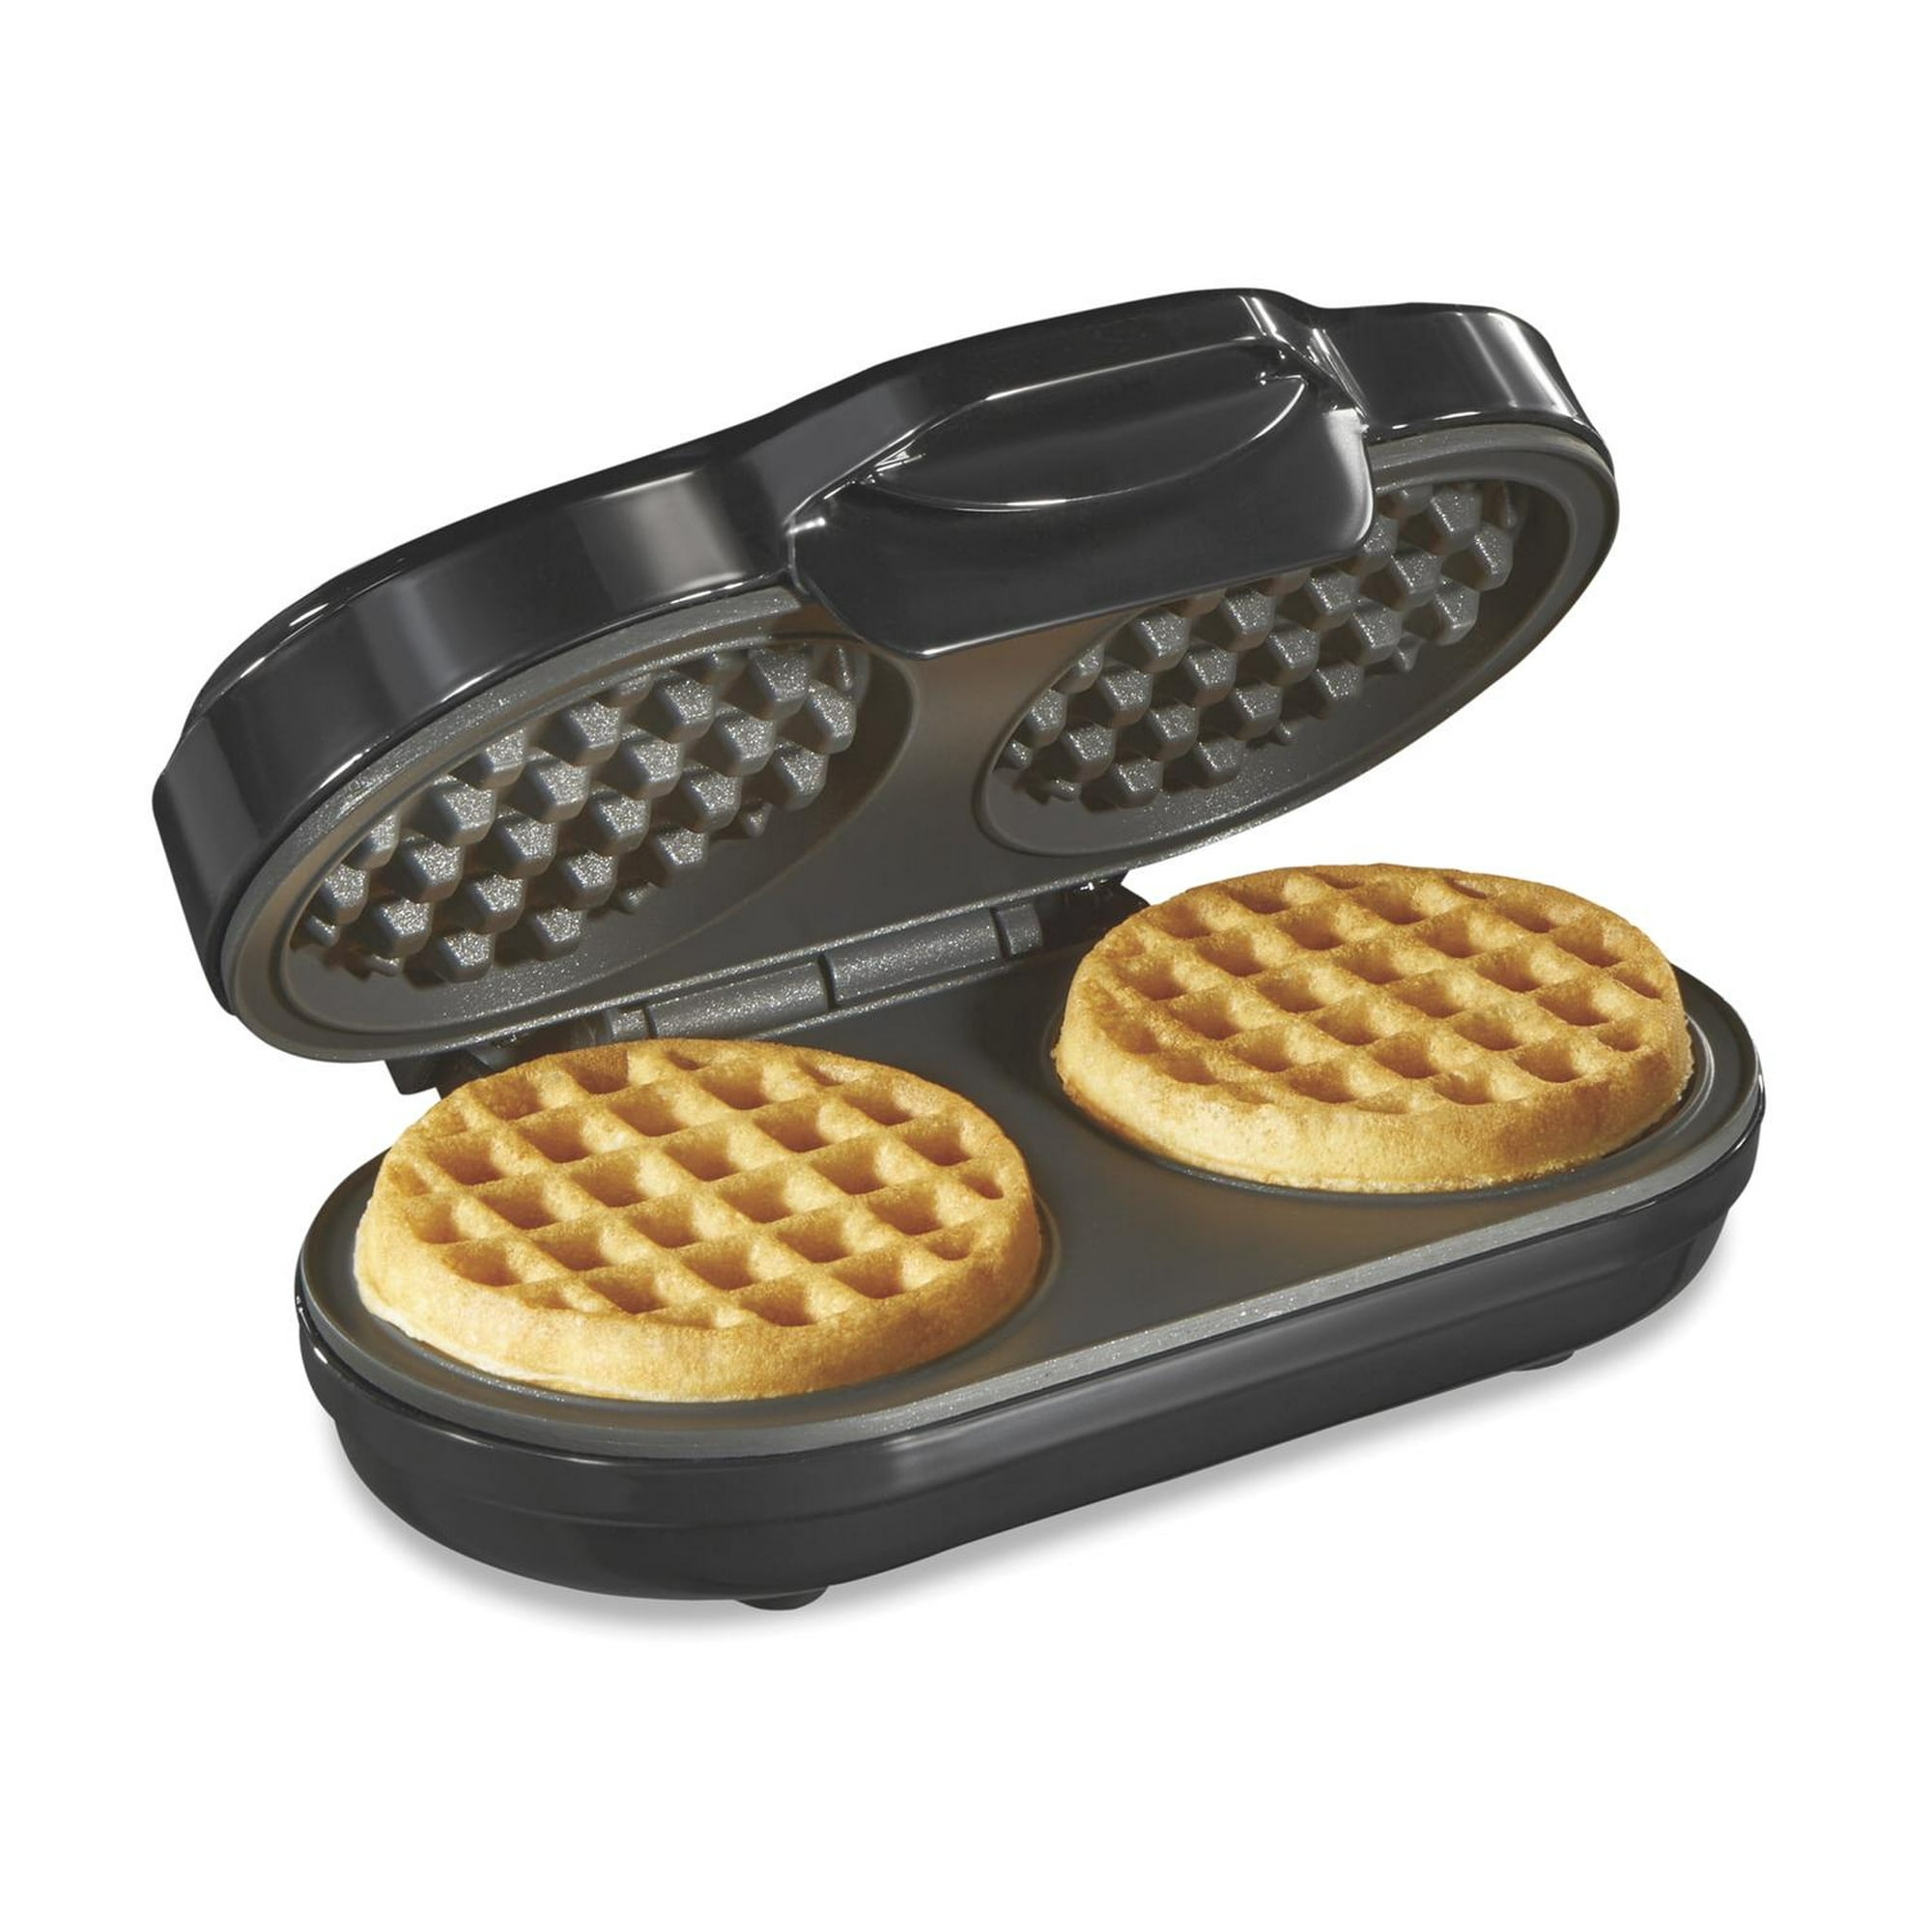 Waflera Eletrica Maquina para hacer waffles con Doble Plancha Antiadhe –